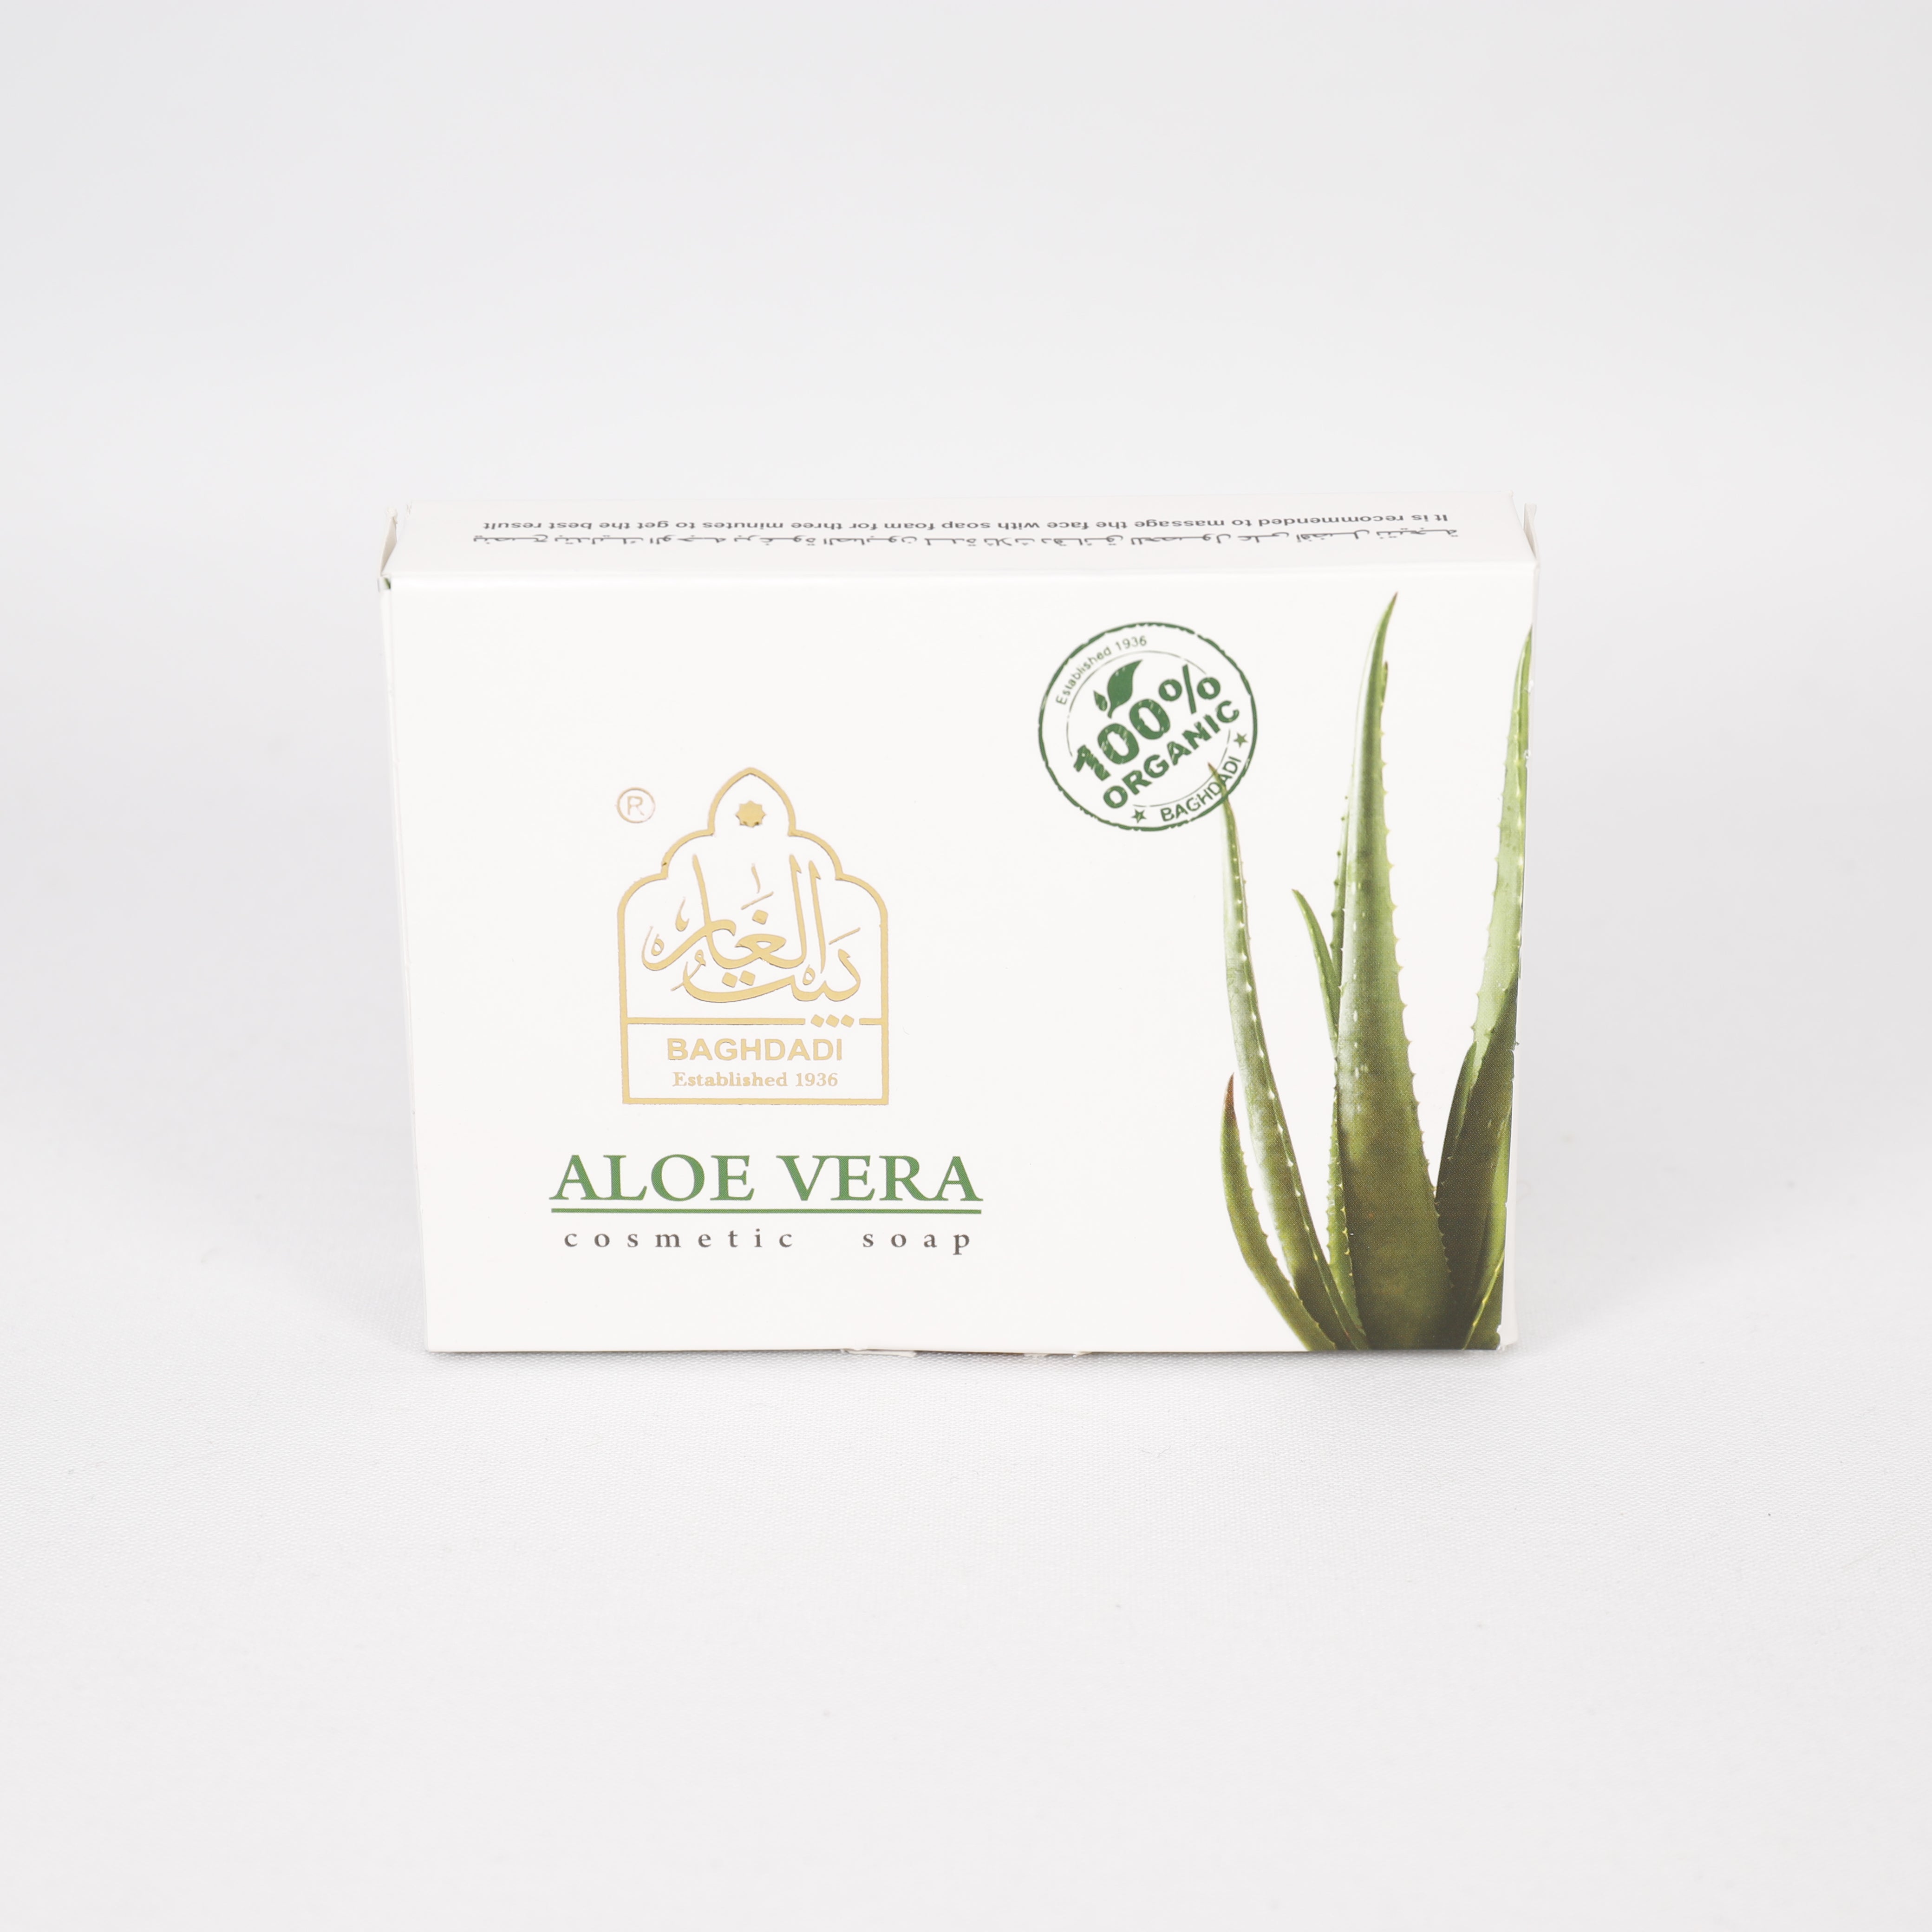 100g Aloe Vera Seife, 70% Kokosnussöl, 15% Olivenöl, 5% Öle, 7% Aloe Vera Gel Verseifung, 100% Organic, 100g